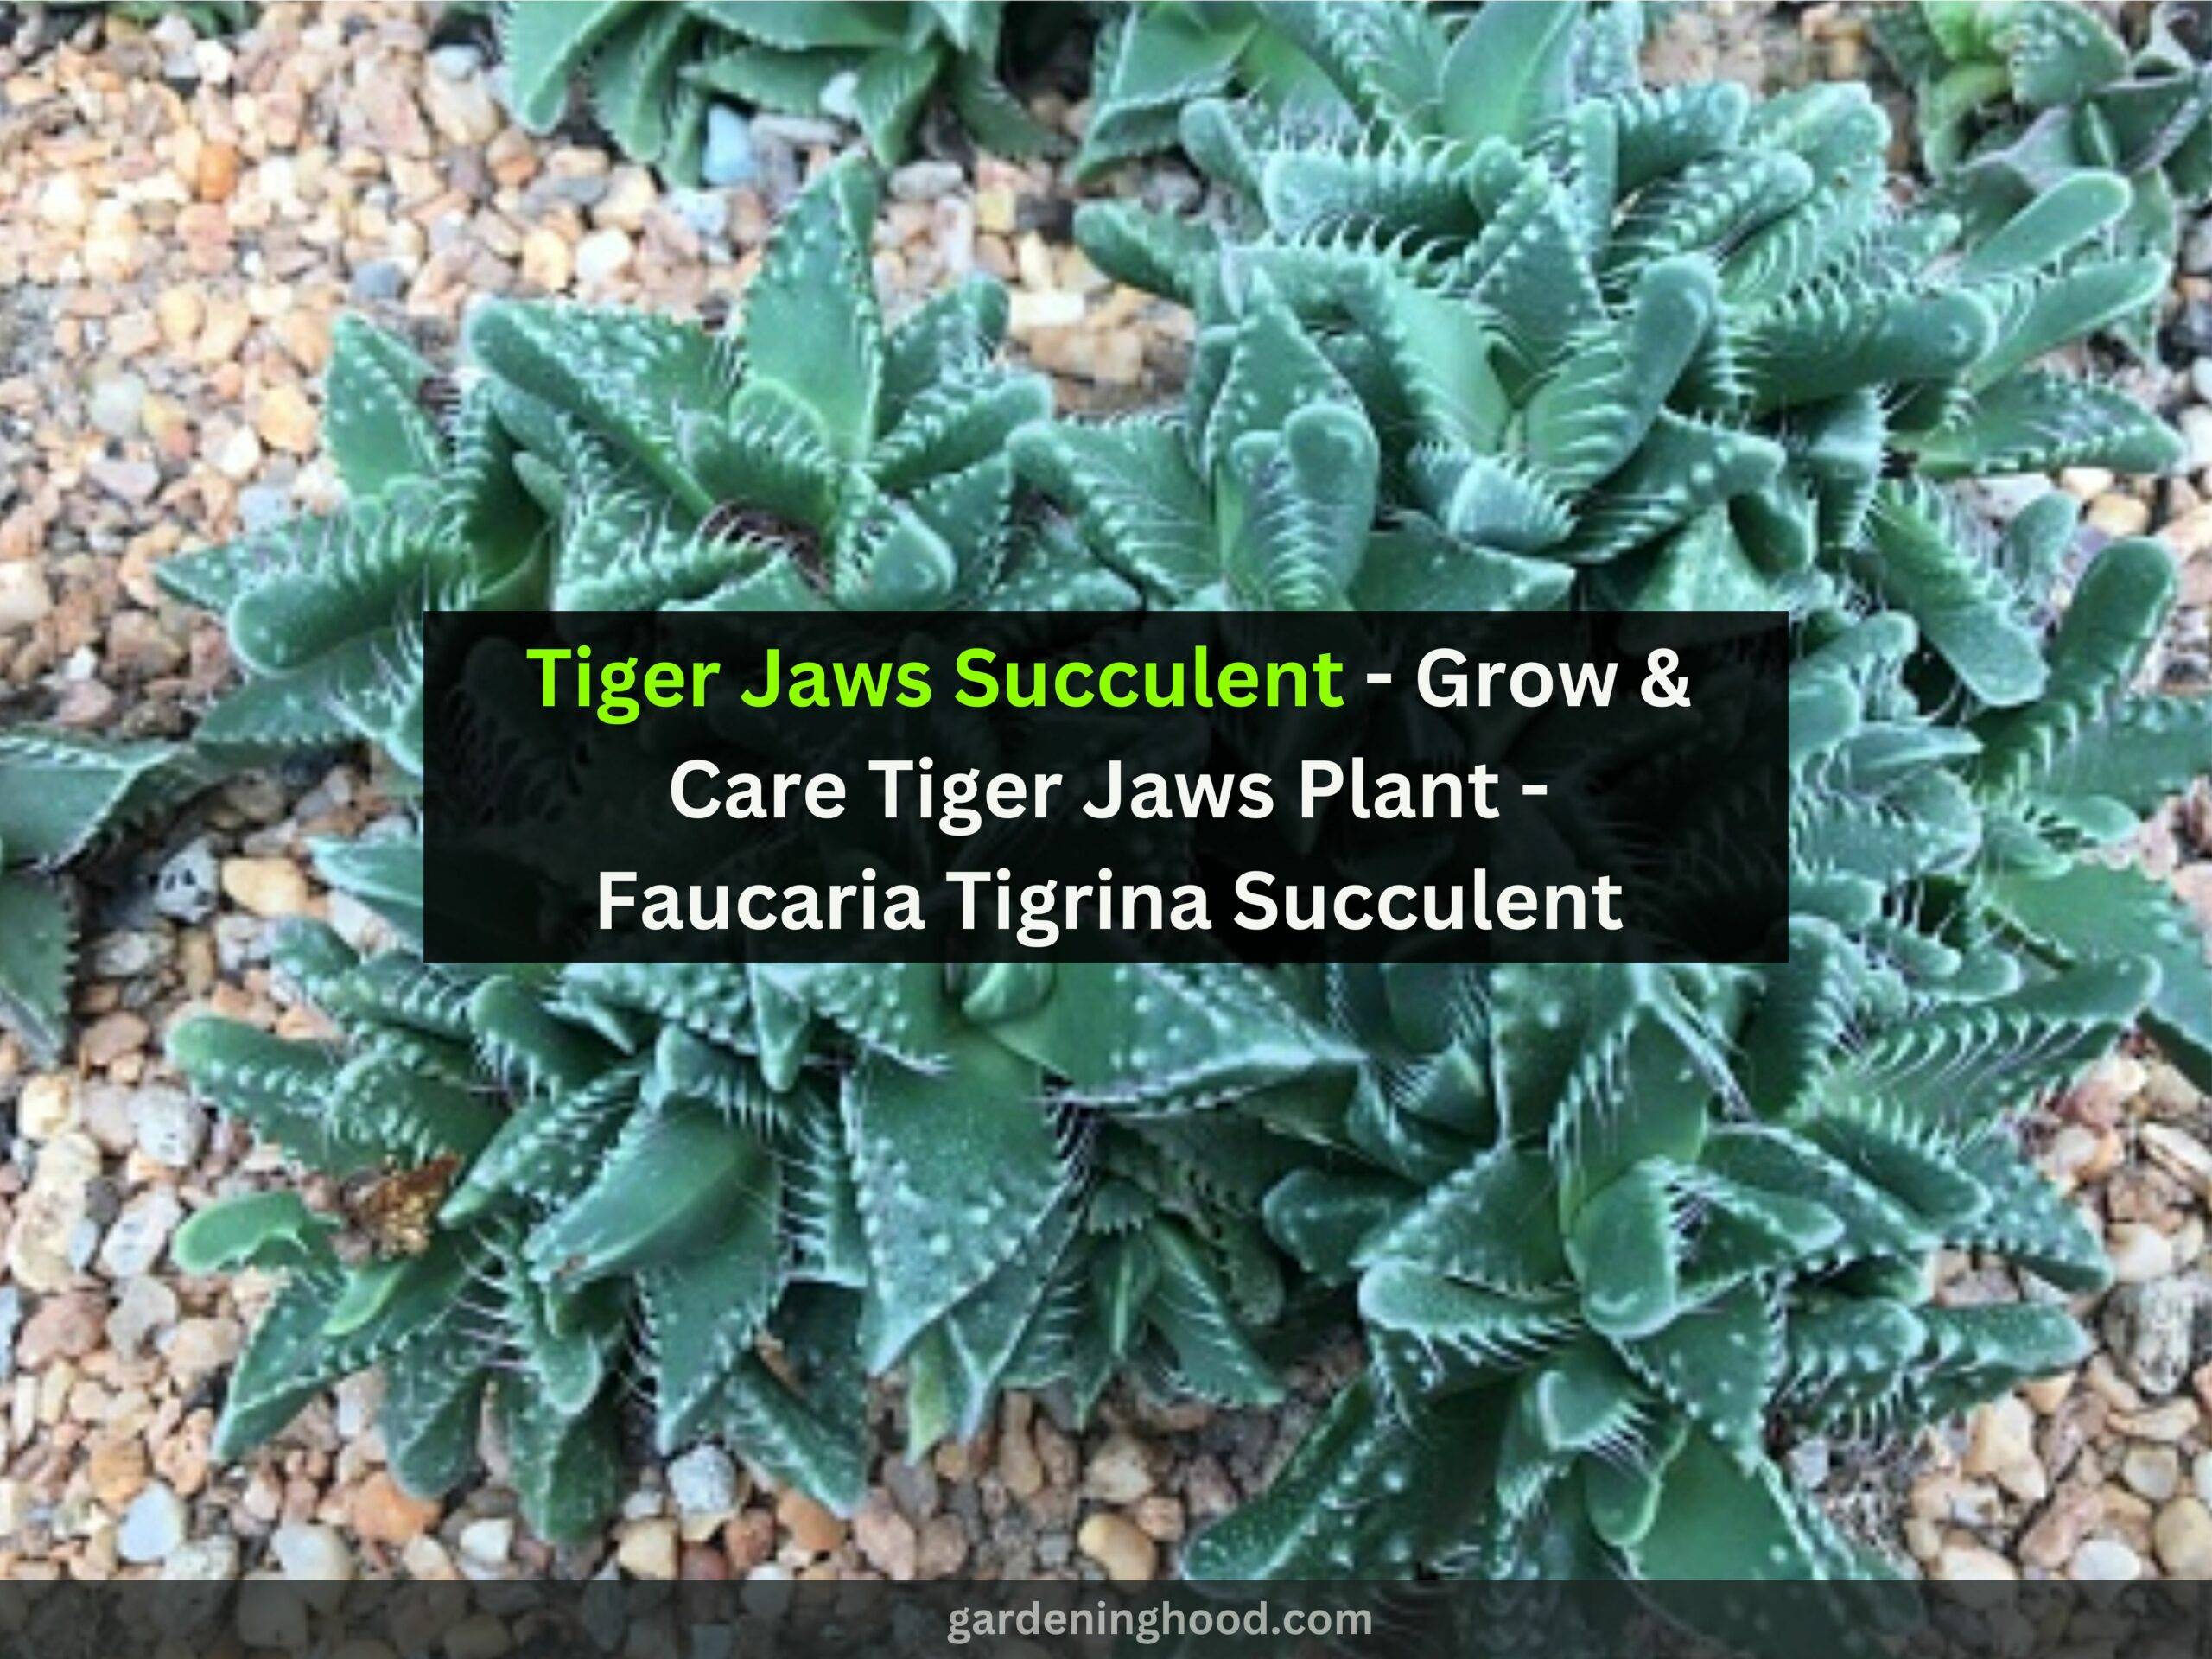 Tiger Jaws Succulent - Grow & Care Tiger Jaws Plant - Faucaria Tigrina Succulent